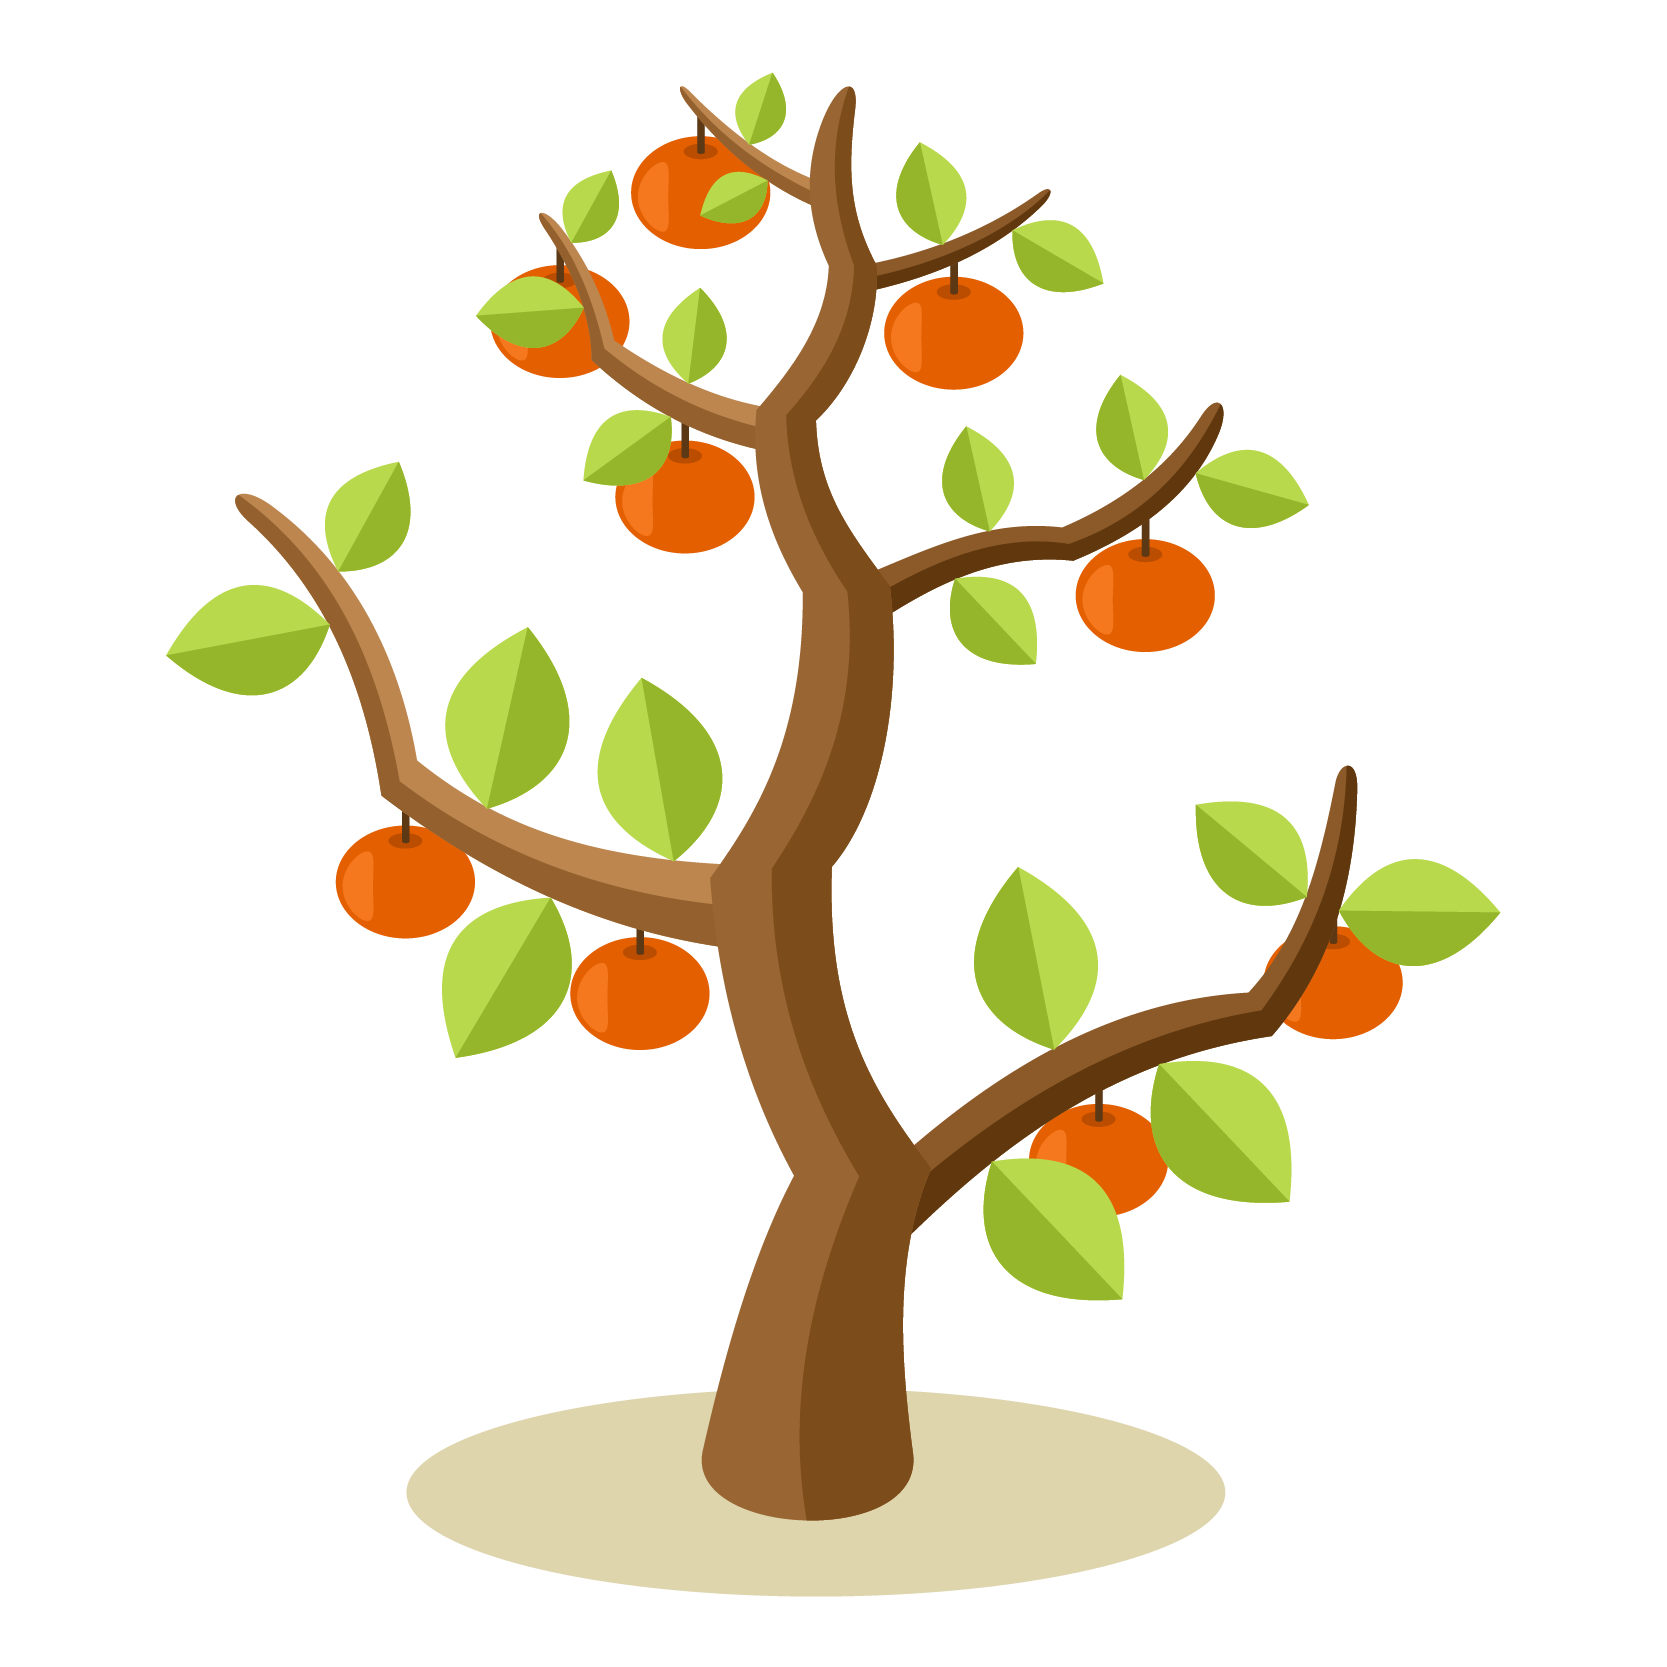 Fruit Trees - Home Gardening Apple, Cherry, Pear, Plum: Vector Fruit